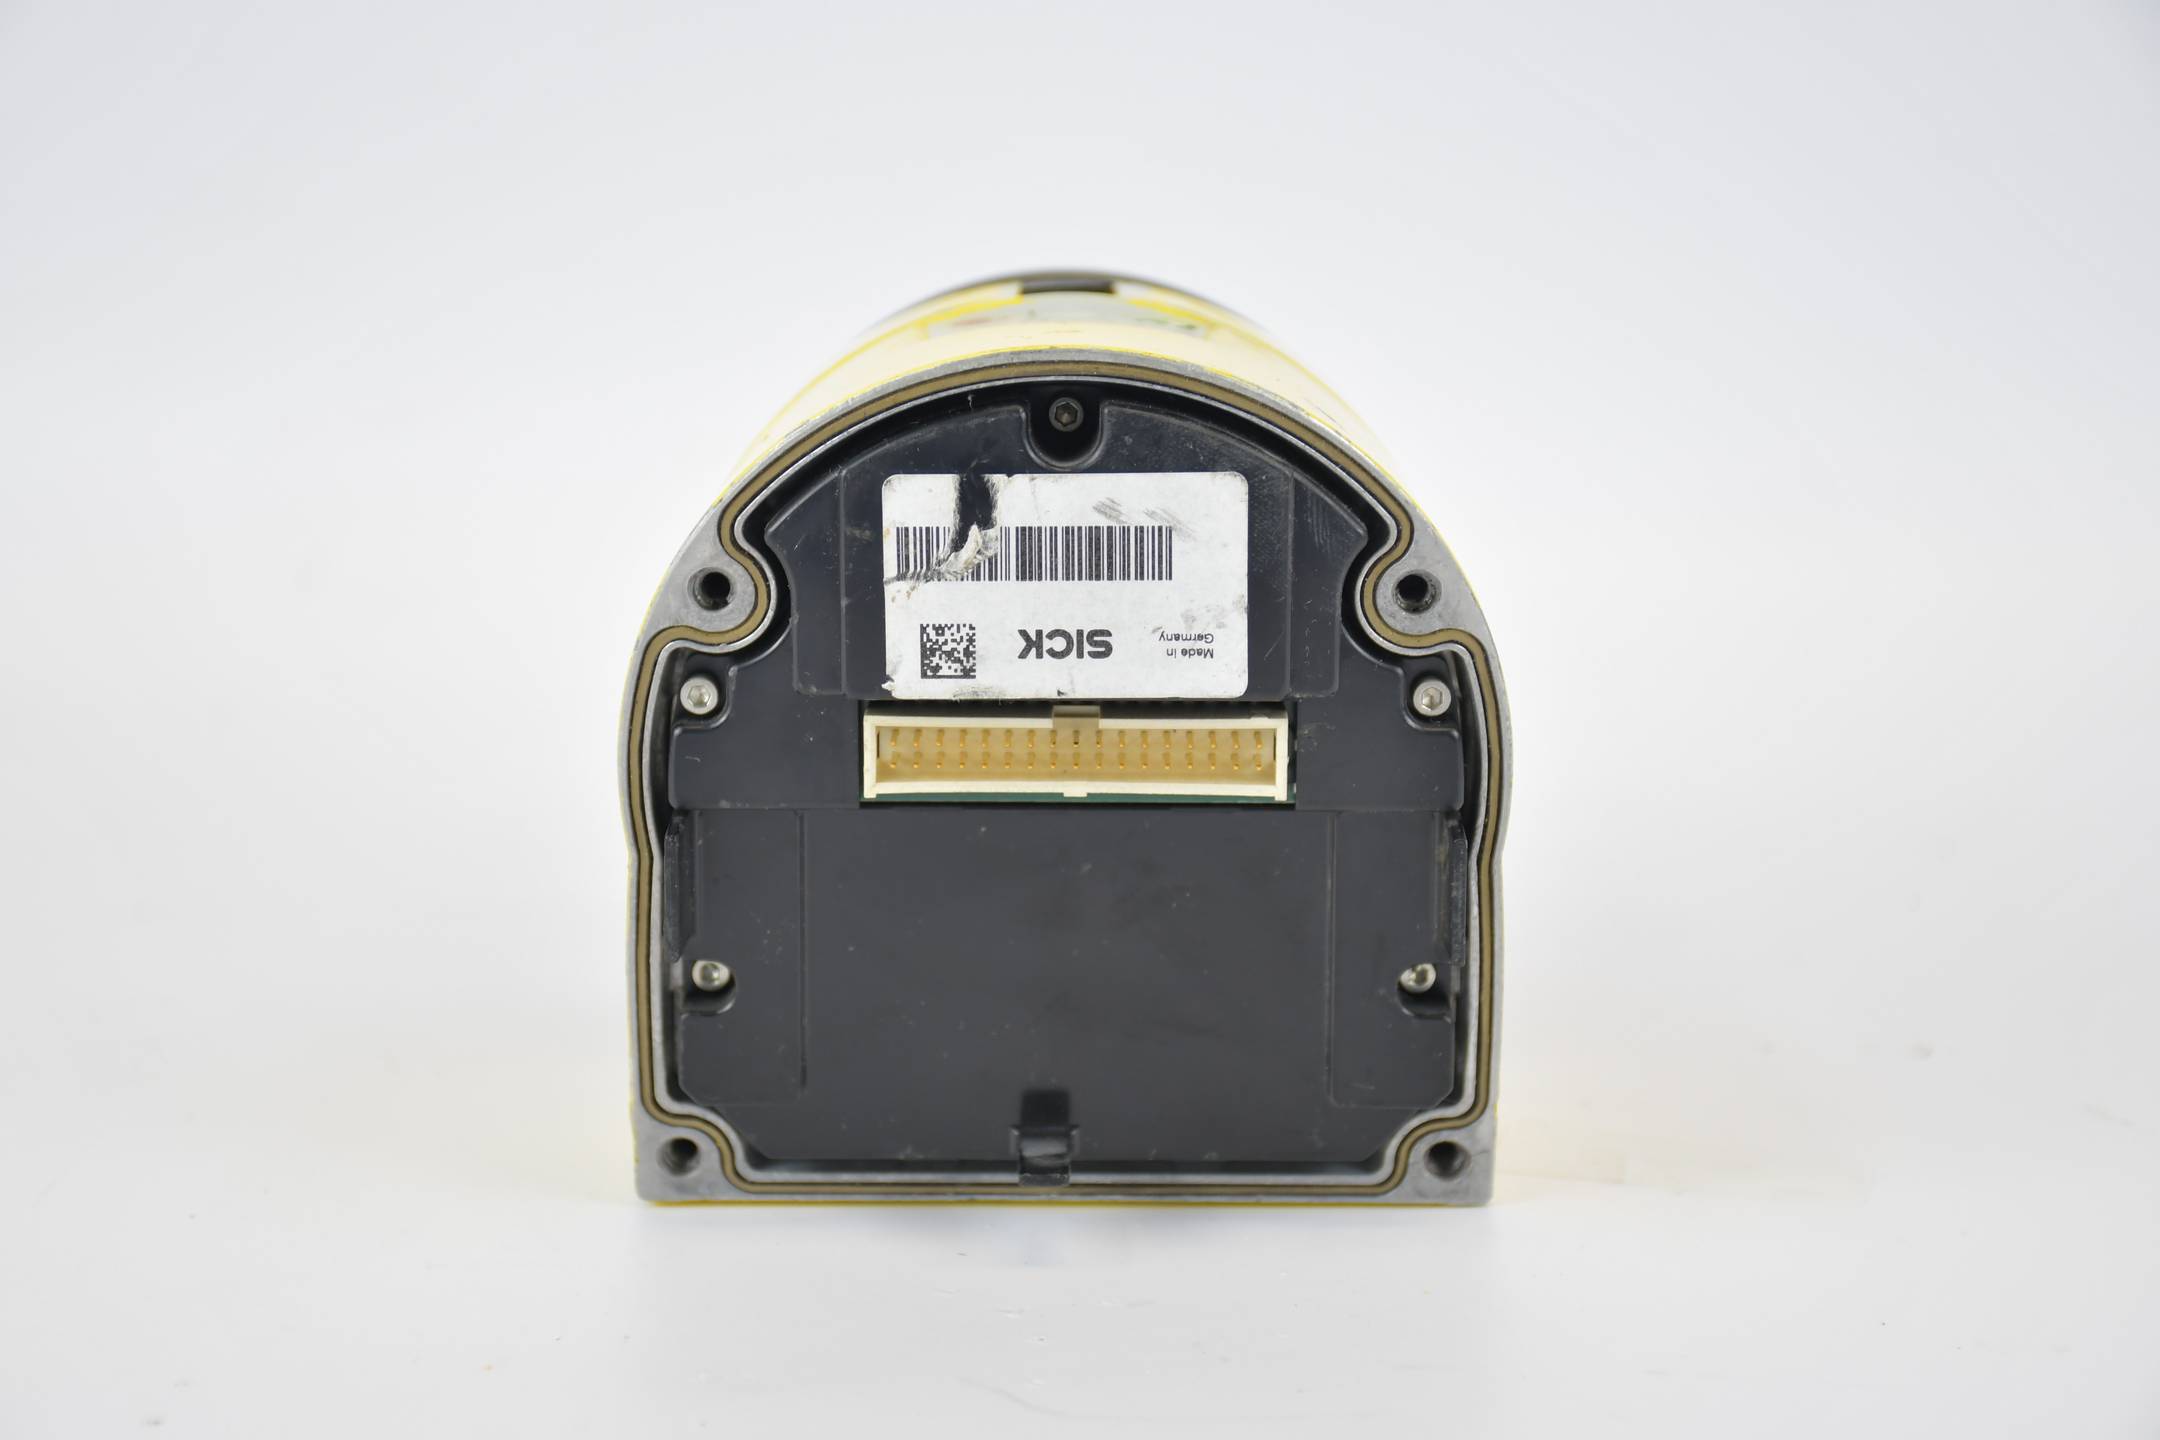 SICK Sicherheitslaserscanner S300 Expert S30B-2011GB ( 1050193 )